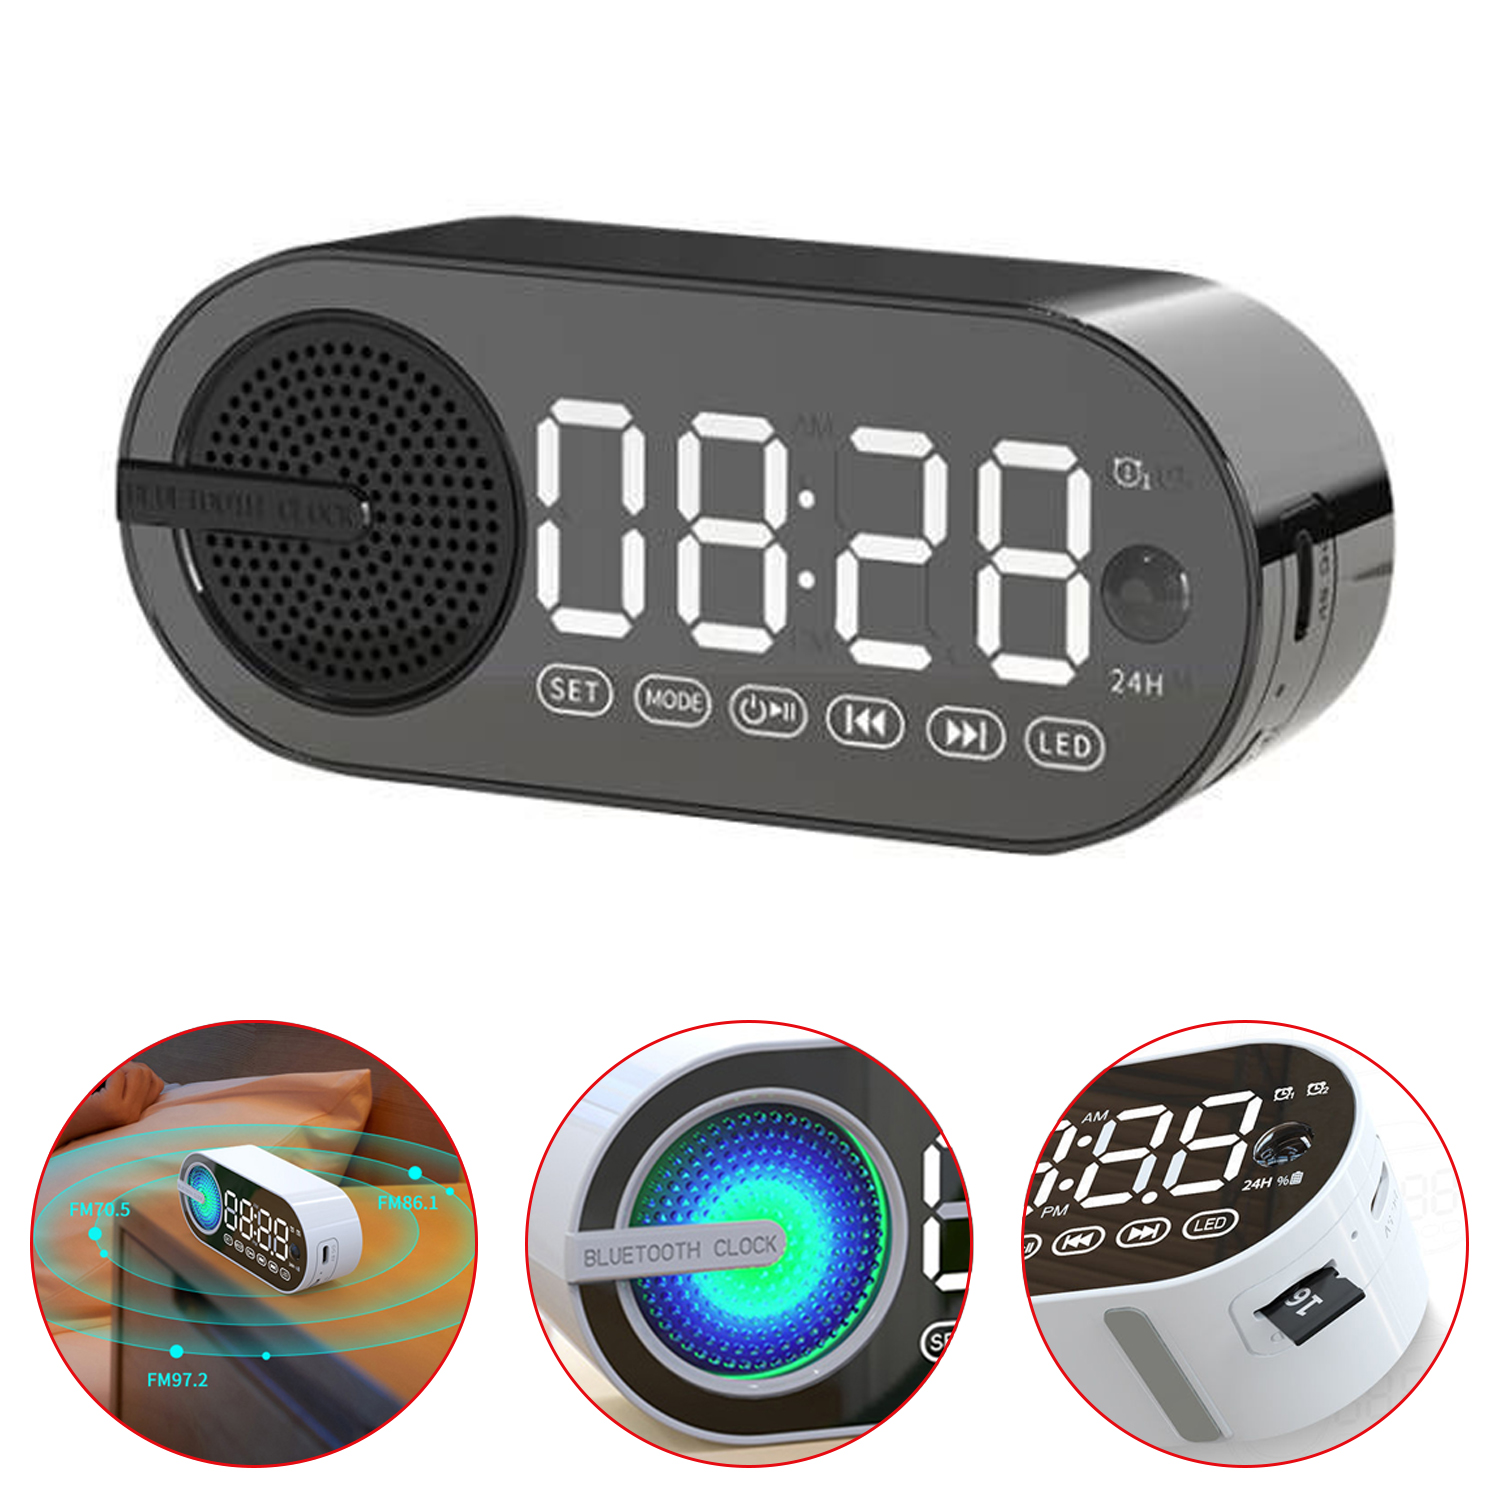 Reloj despertador de Radio con carga USB, Altavoz portátil con Bluetooth RGB, pantalla grande FM, espejo silencioso, dormitorio Digital, habitación, oficina, cubierta